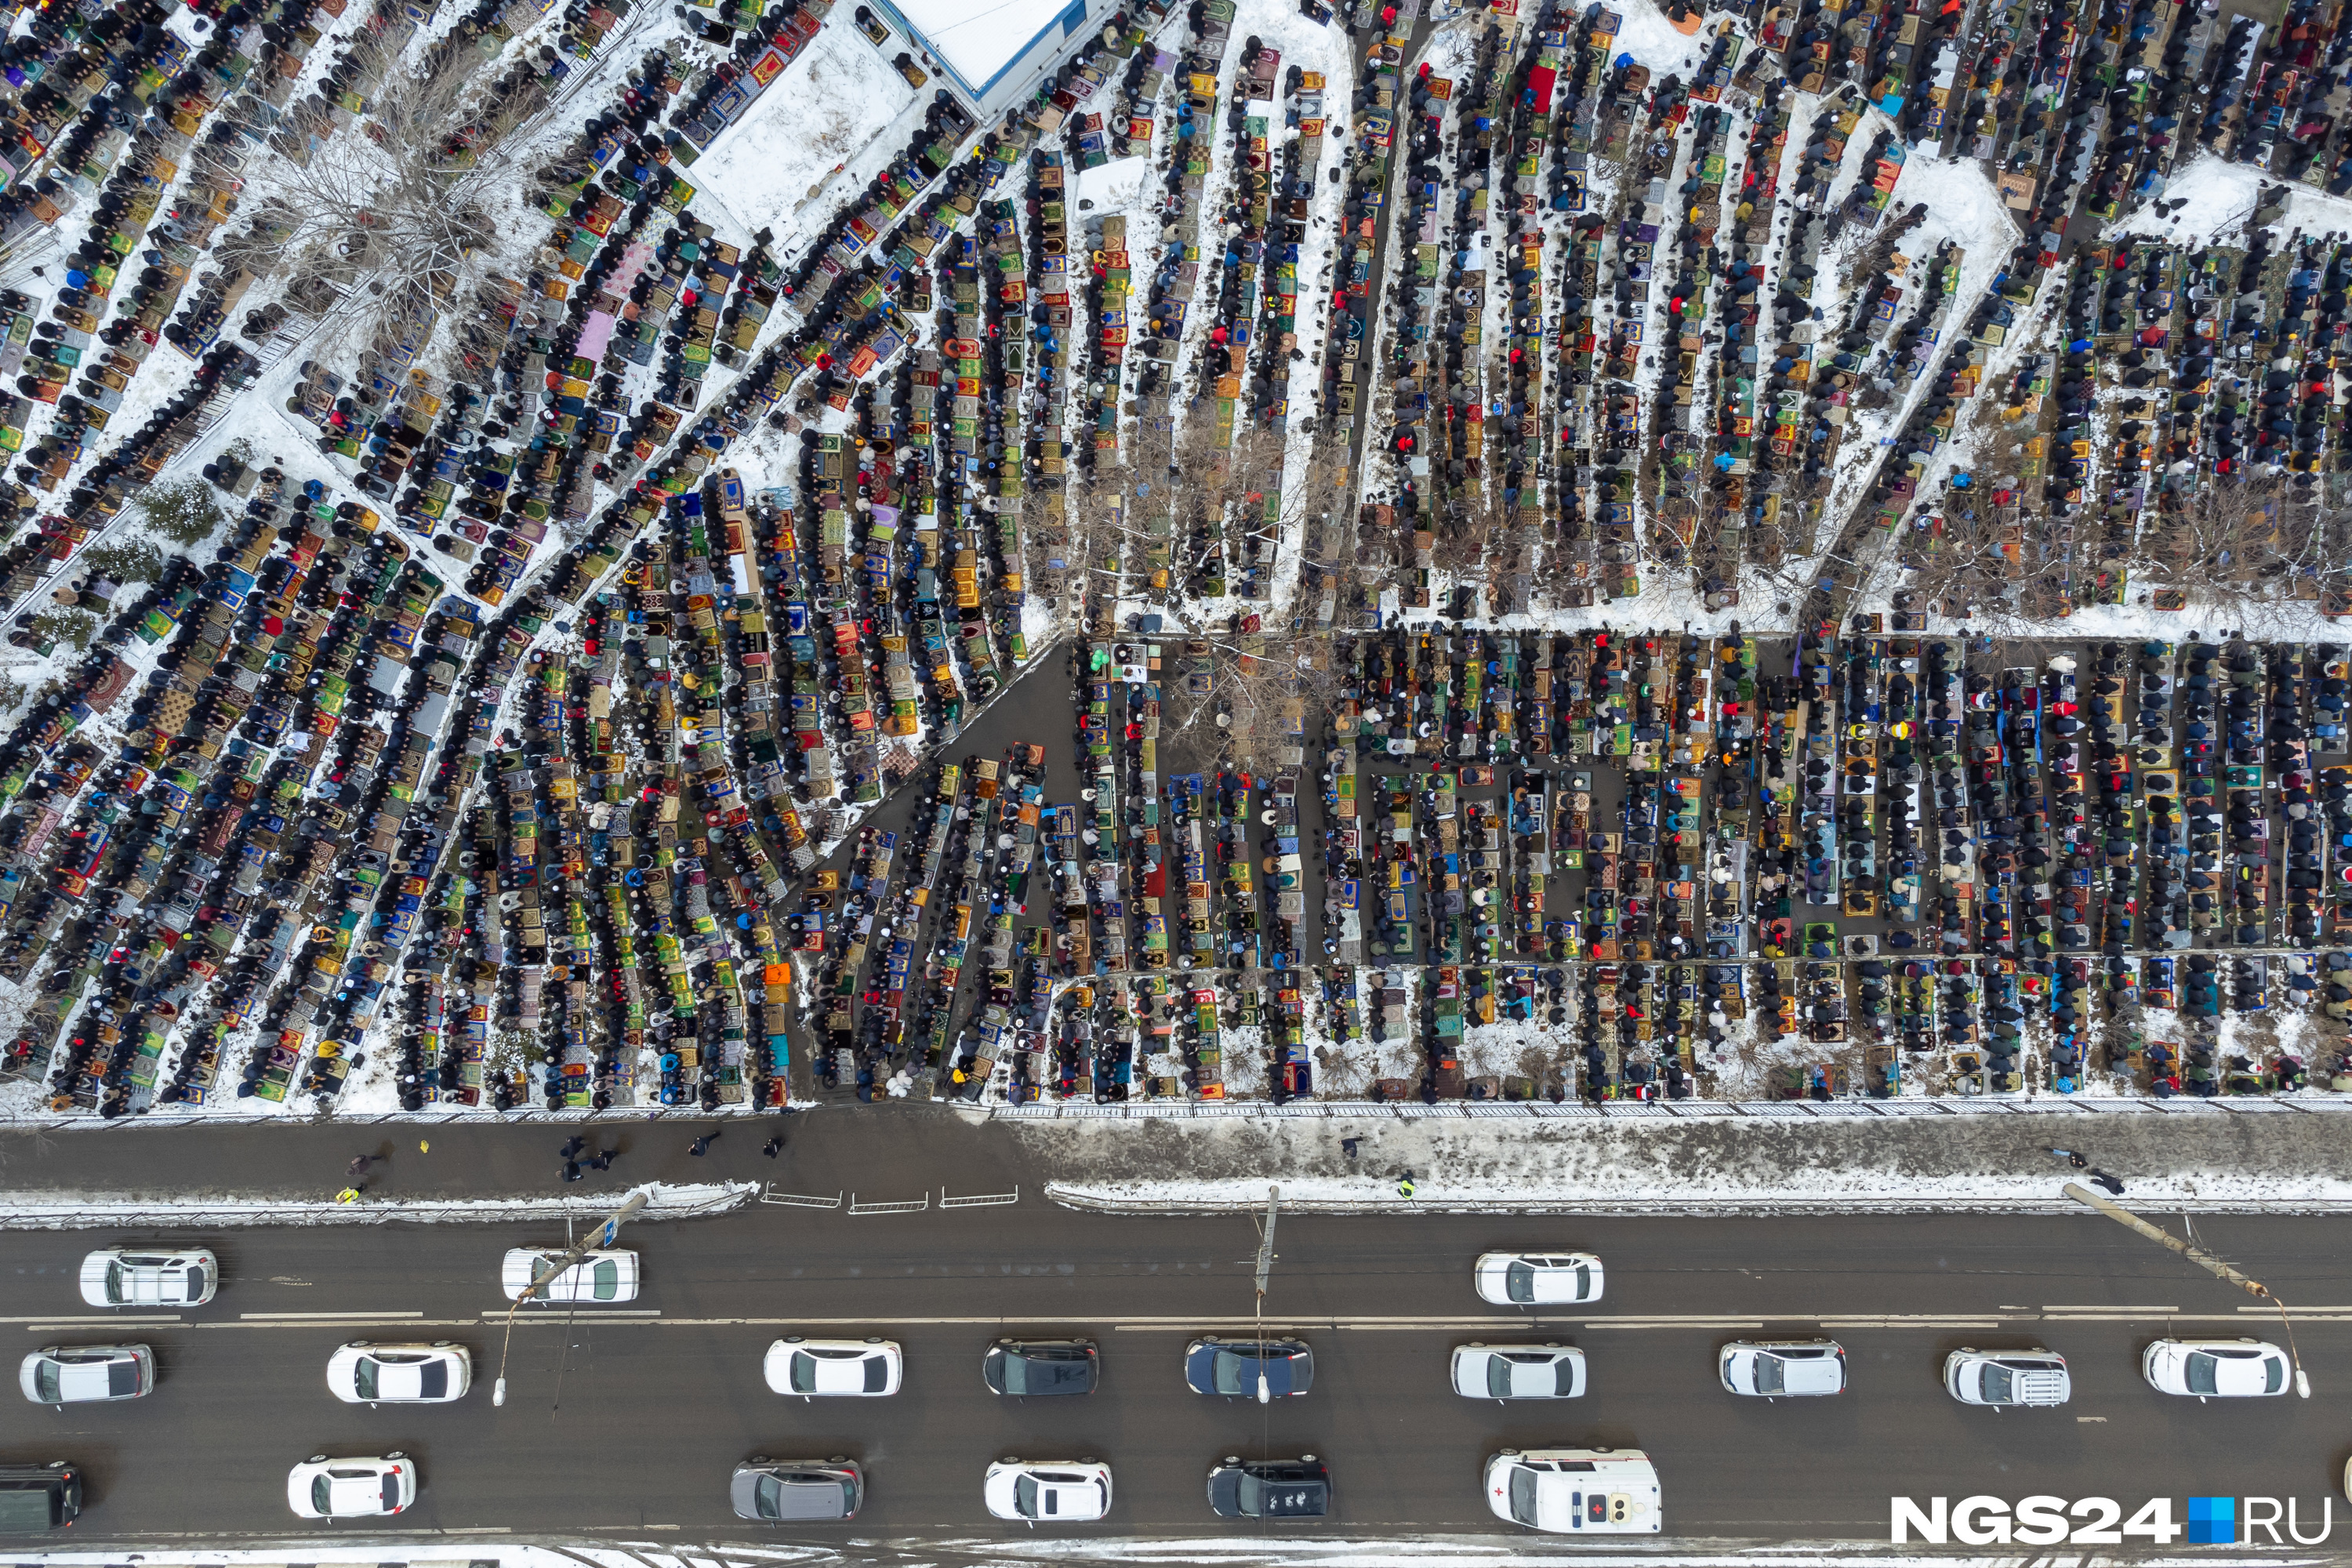 Когда видишь автомобили на фото, понимаешь, что аккуратные ряды — это люди